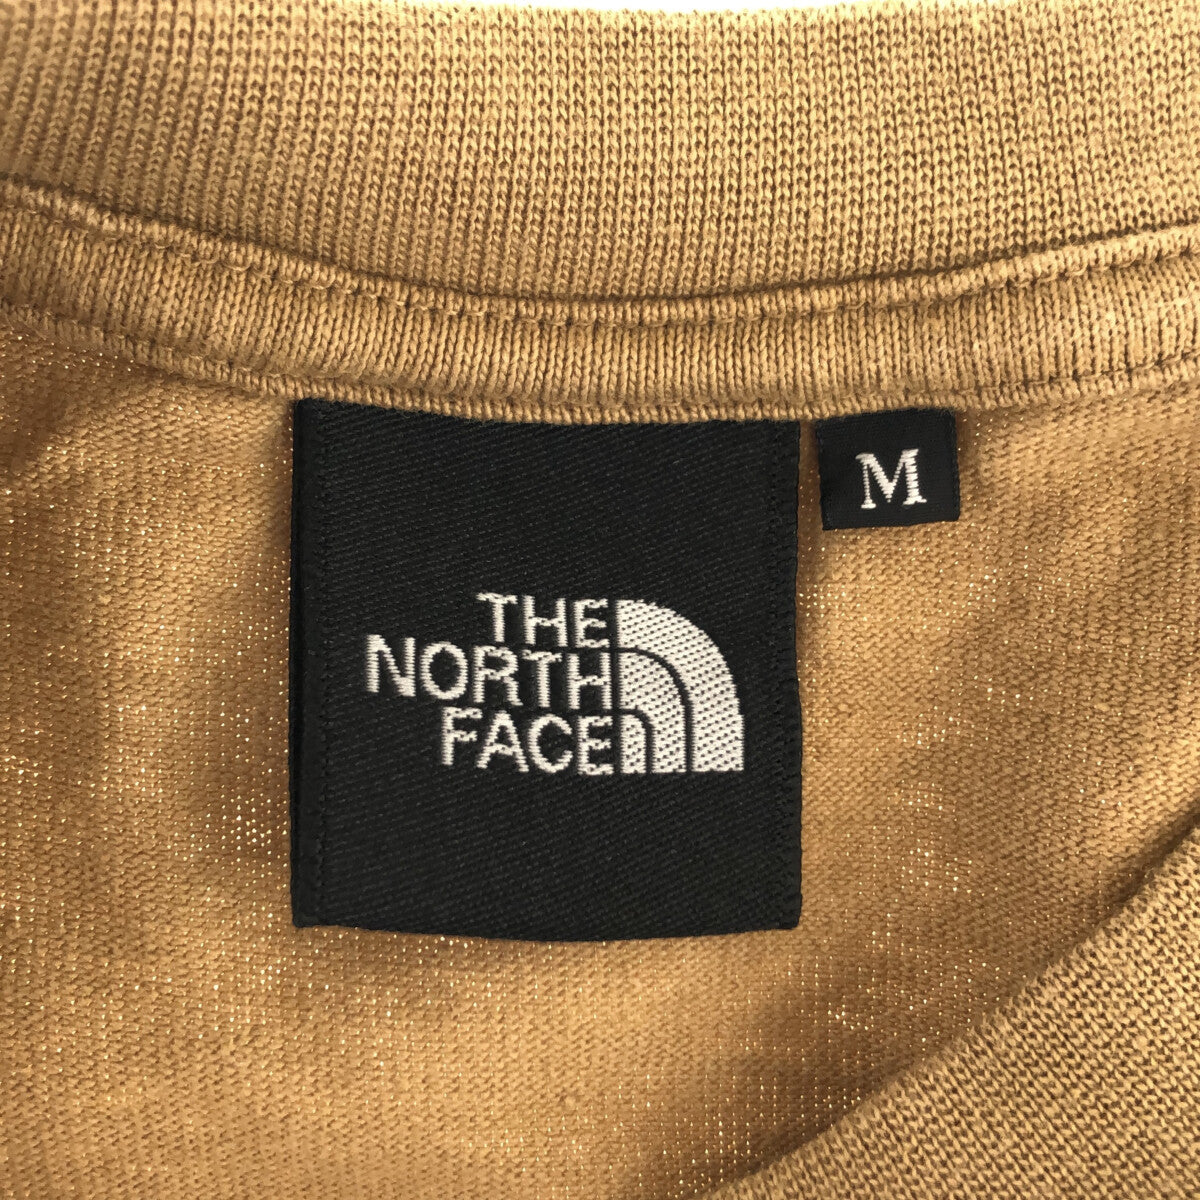 THE NORTH FACE / ザノースフェイス | ロングスリーブ ヌプシ コットン Tシャツ | M |